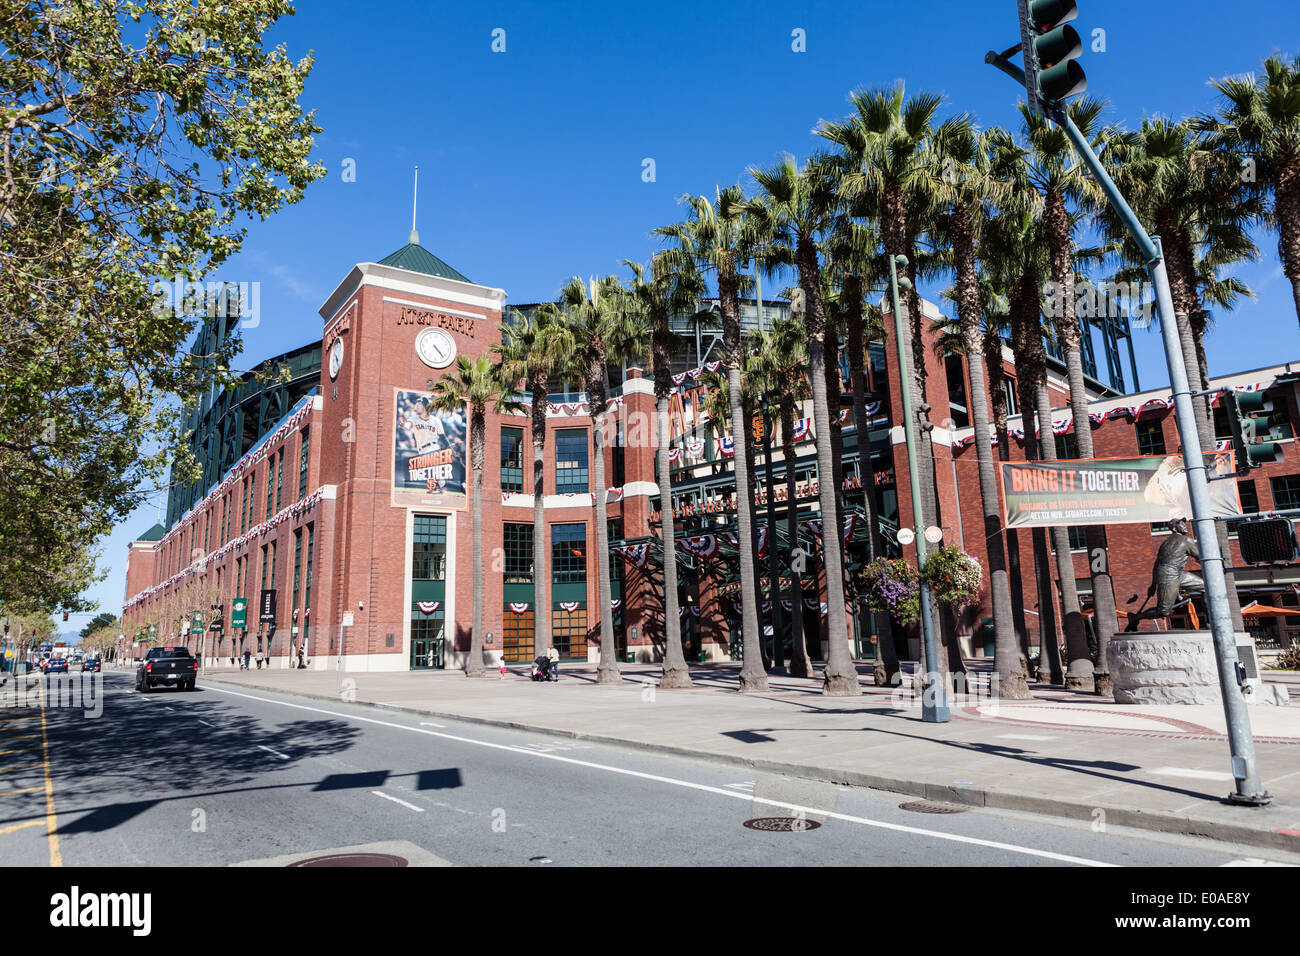 AT&T Ballpark, San Francisco Stock Photo